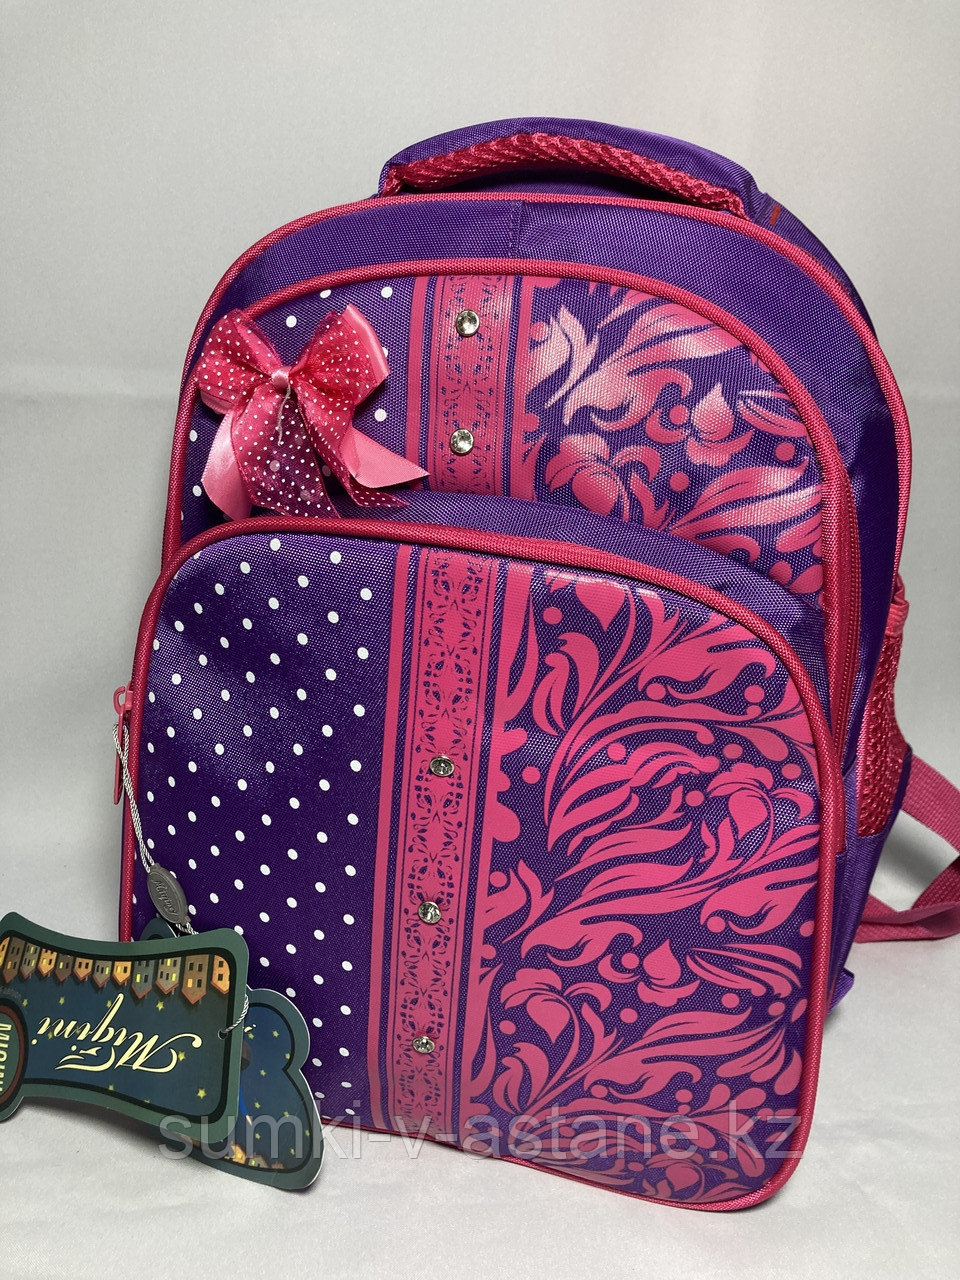 Школьный рюкзак для девочек, 1-3-й класс. Высота 37 см, ширина 26 см, глубина 17 см.